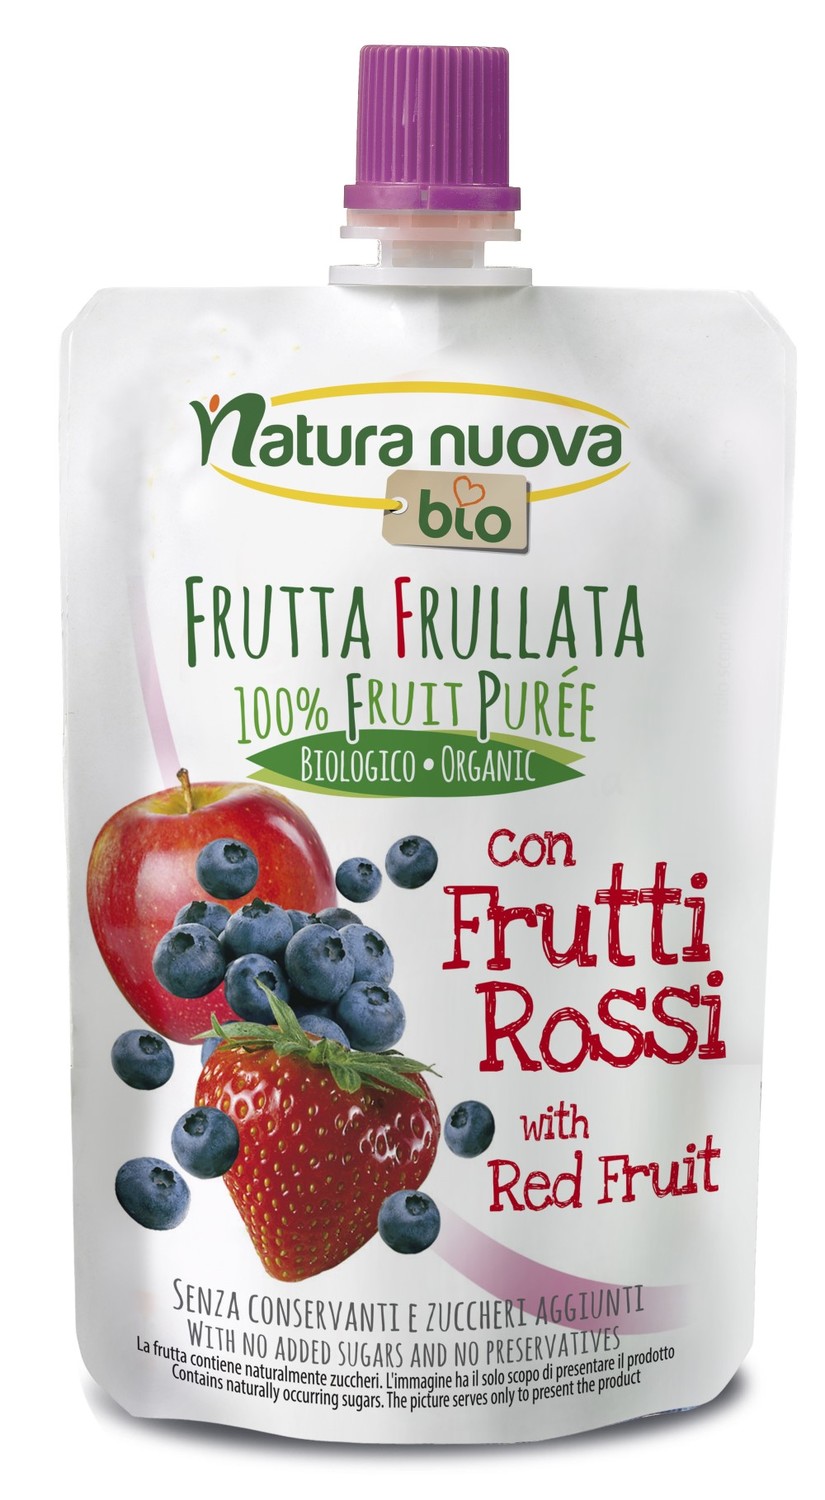 Natura Nuova Bio propone Frutta frullata con frutti rossi